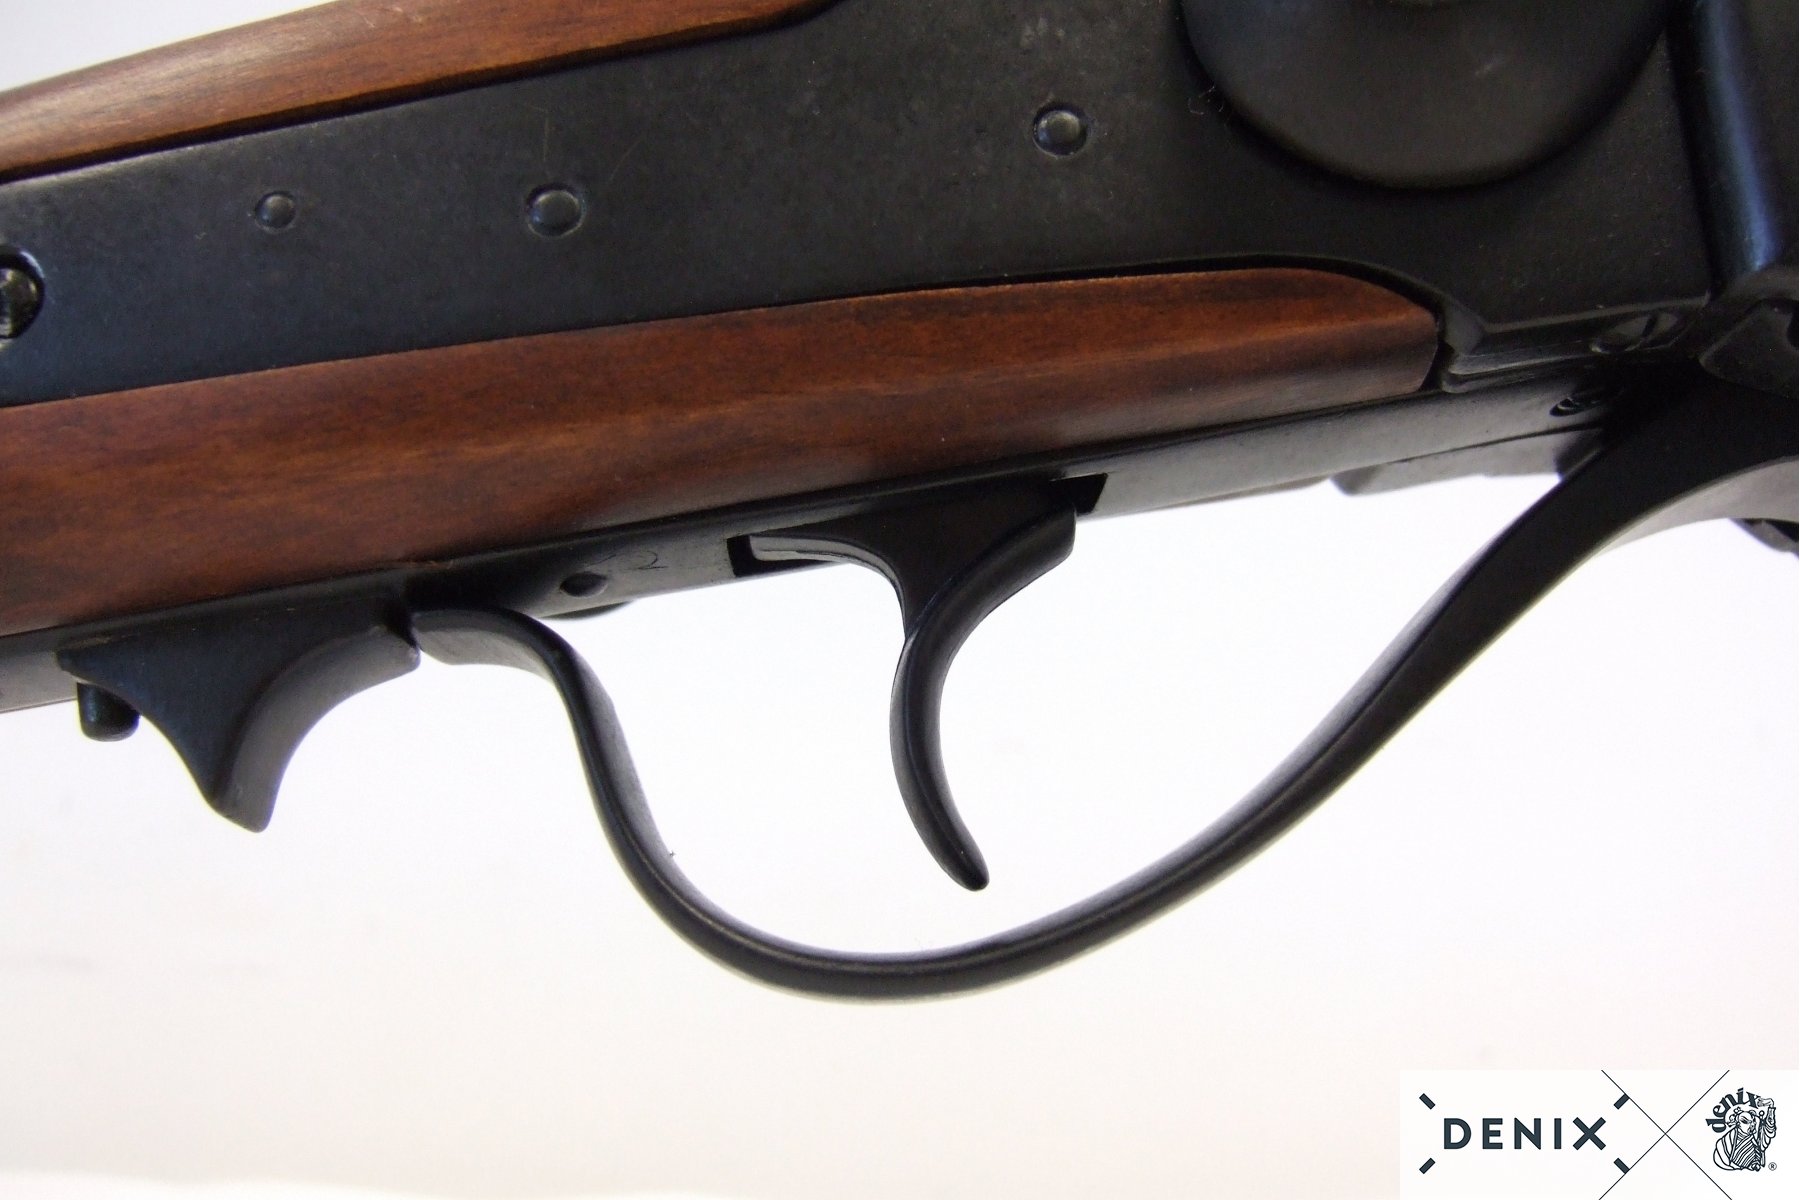 American Sharps carbine, USA 1859, black